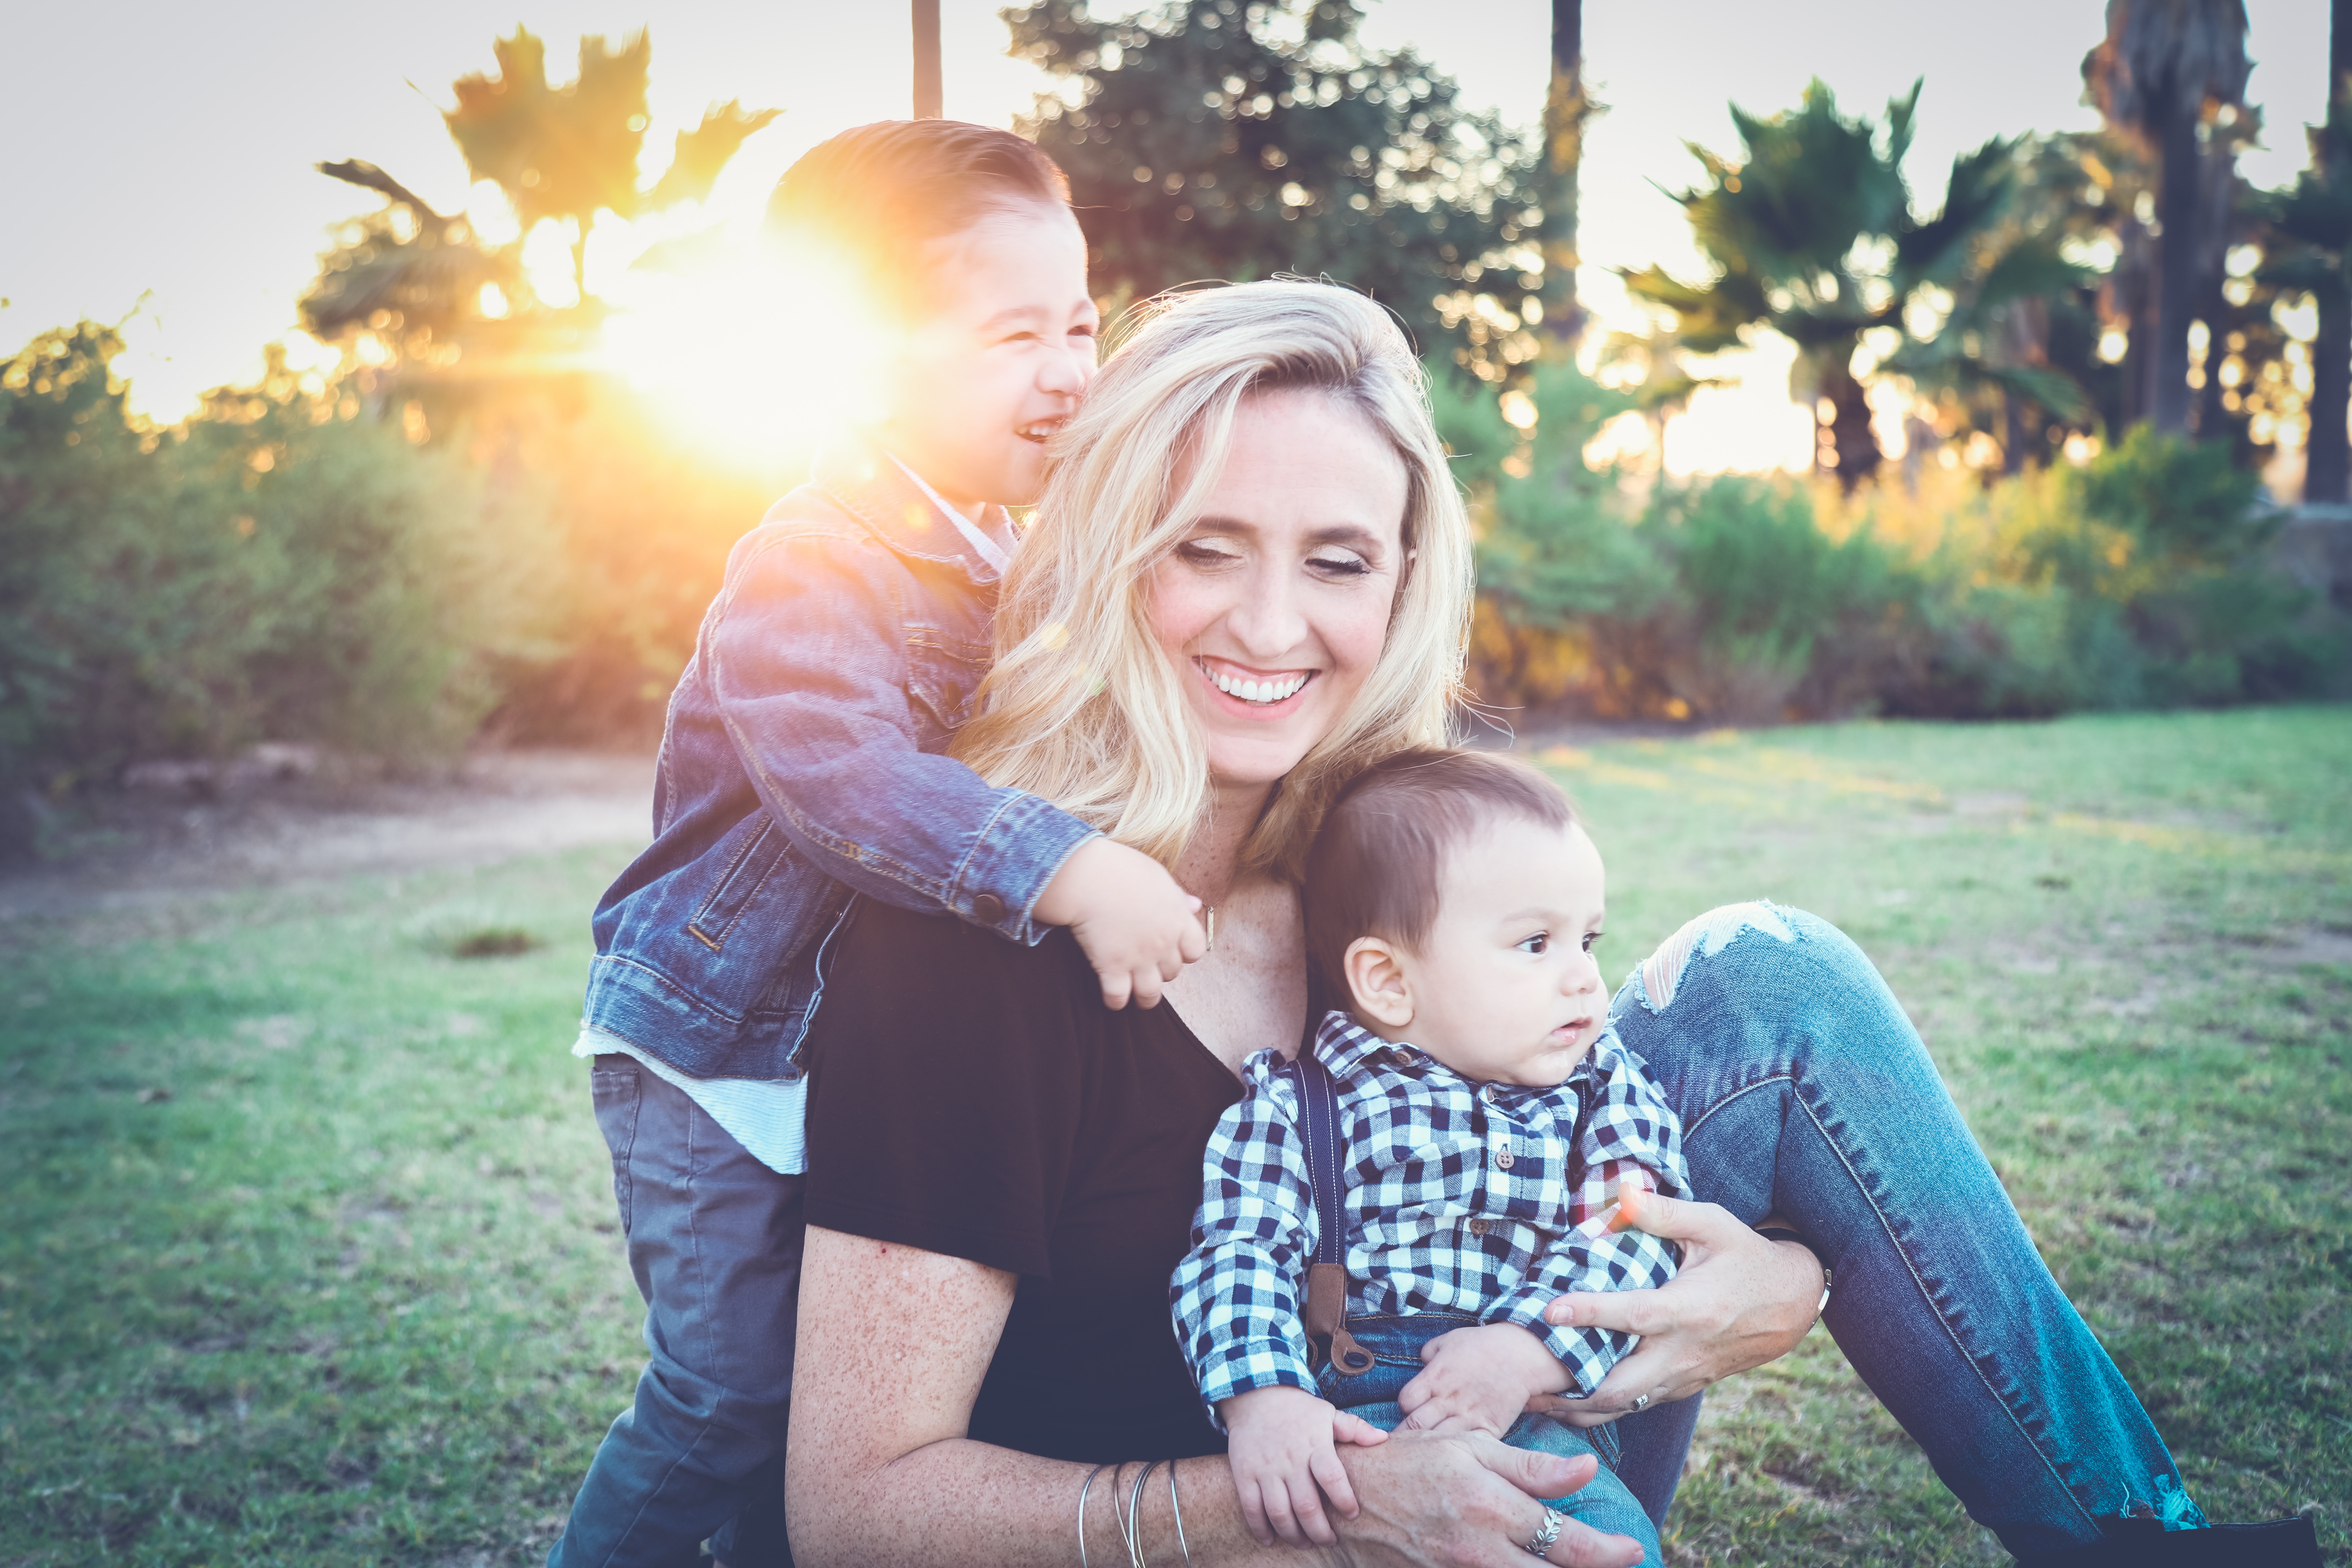 Projekt zakłada także prawo do urlopu rodzicielskiego zarówno dla matki, jak i dla ojca, którym przysługiwać ma osobno po 9 tygodni urlopu rodzicielskiego, którym nie można będzie się dzielić z drugim rodzicem fot. Unsplash/Edward Cisneros